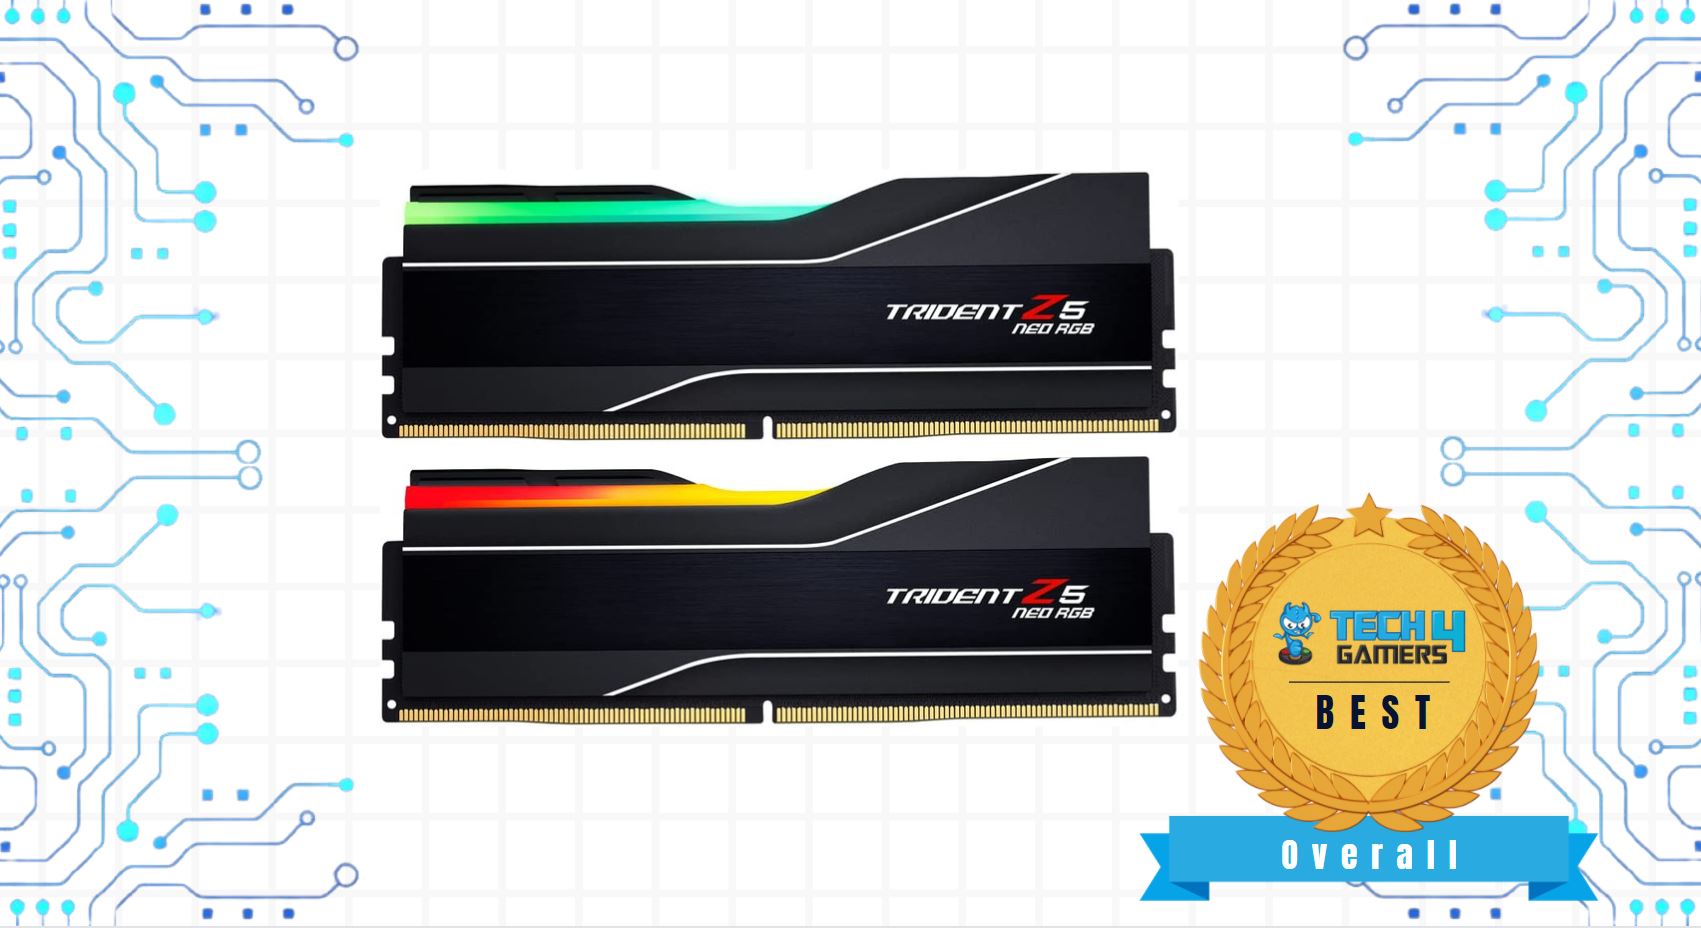 Best Overall RAM For Ryzen 5 7600X - Trident Z5 Neo RGB